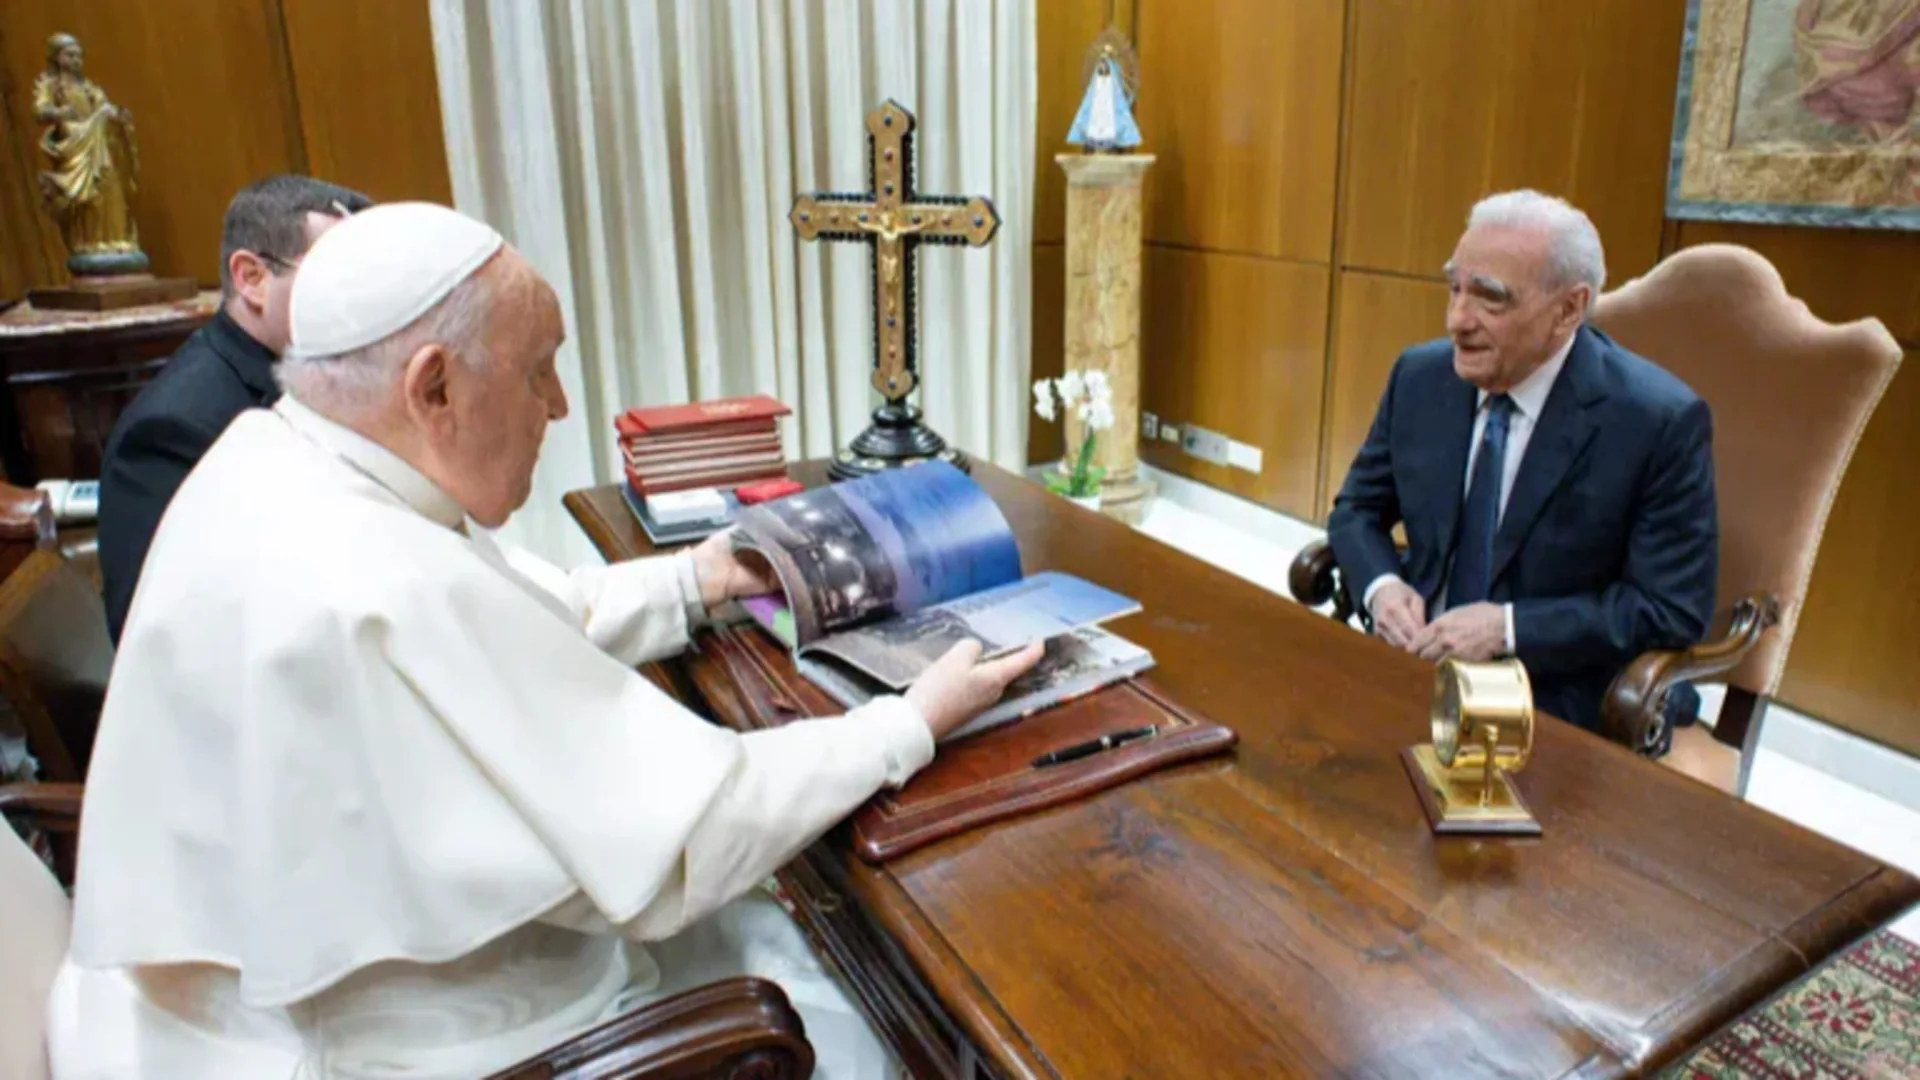 Reunión con el Papa, de Martin Scorsese.